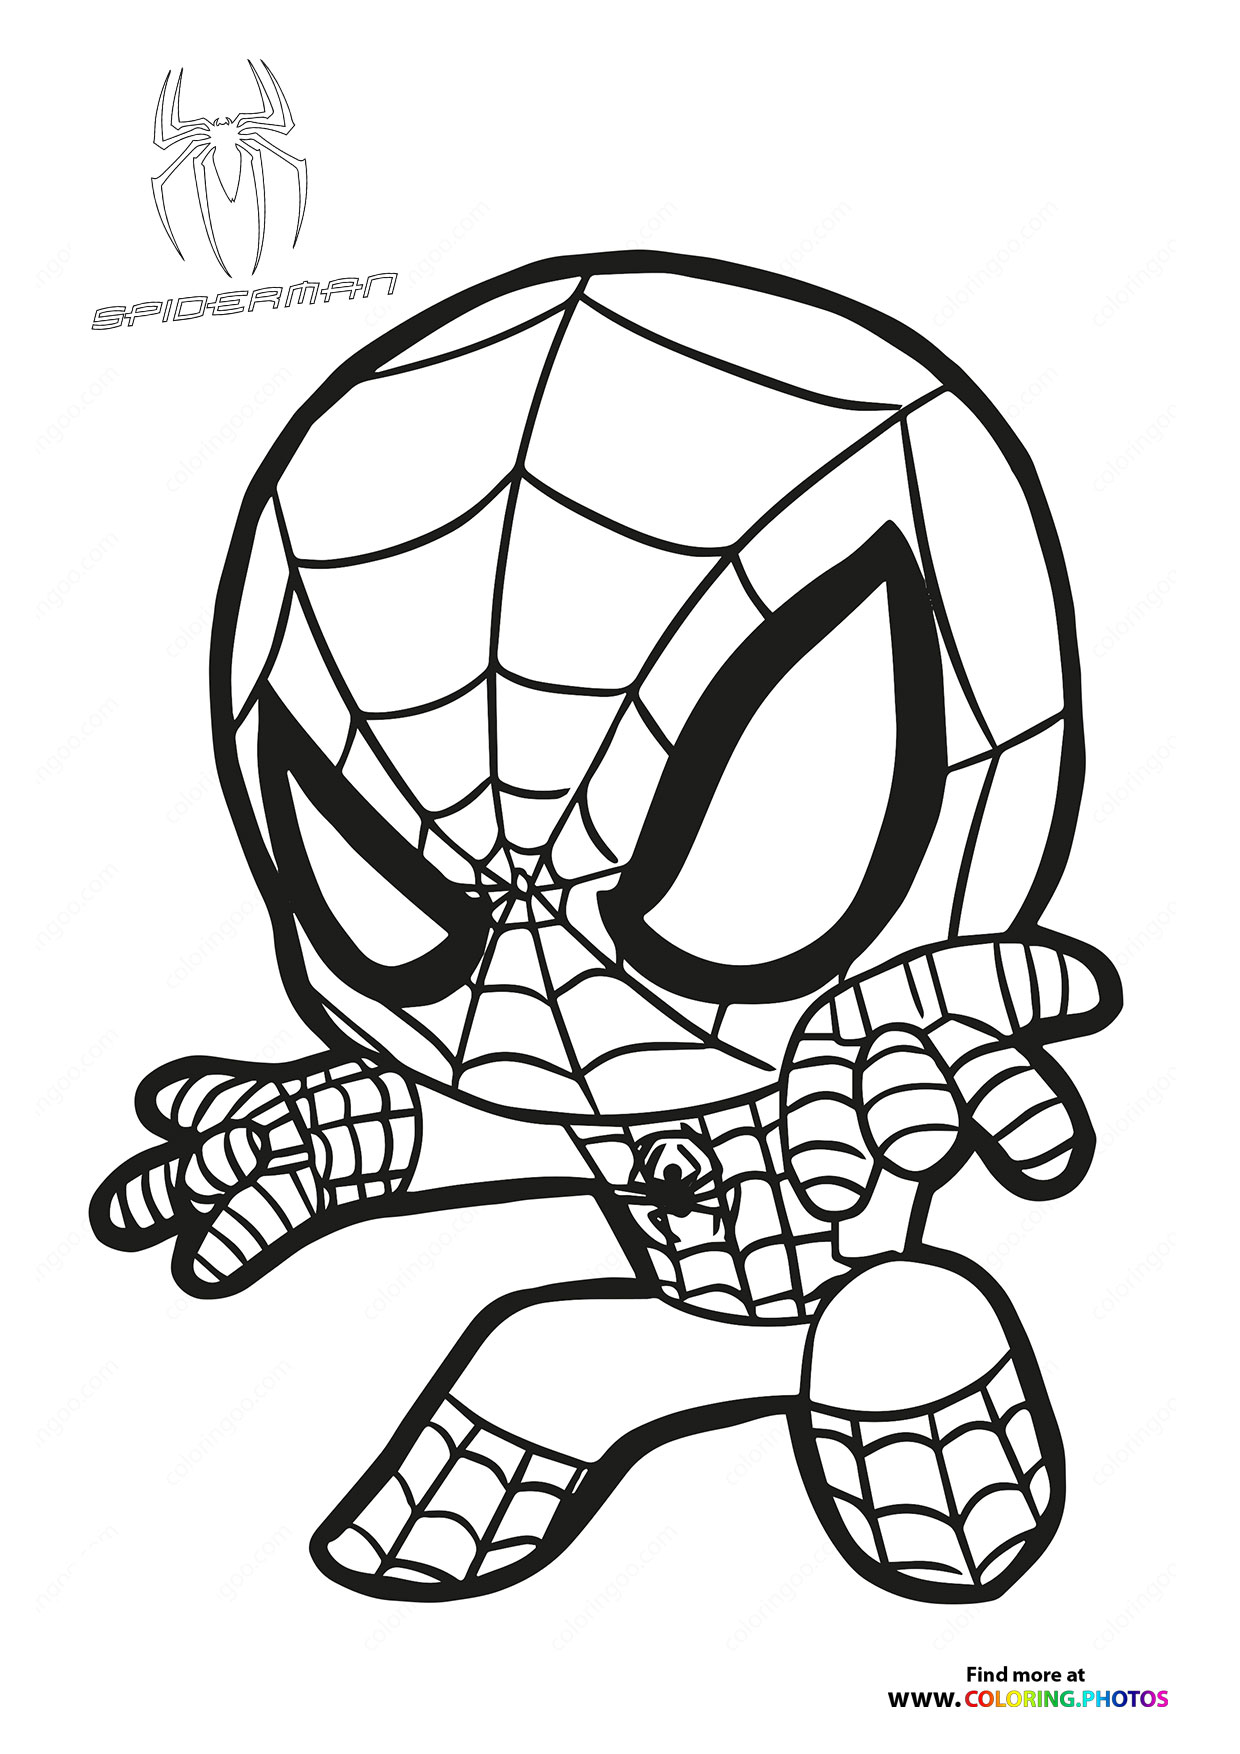 Cute little spiderman